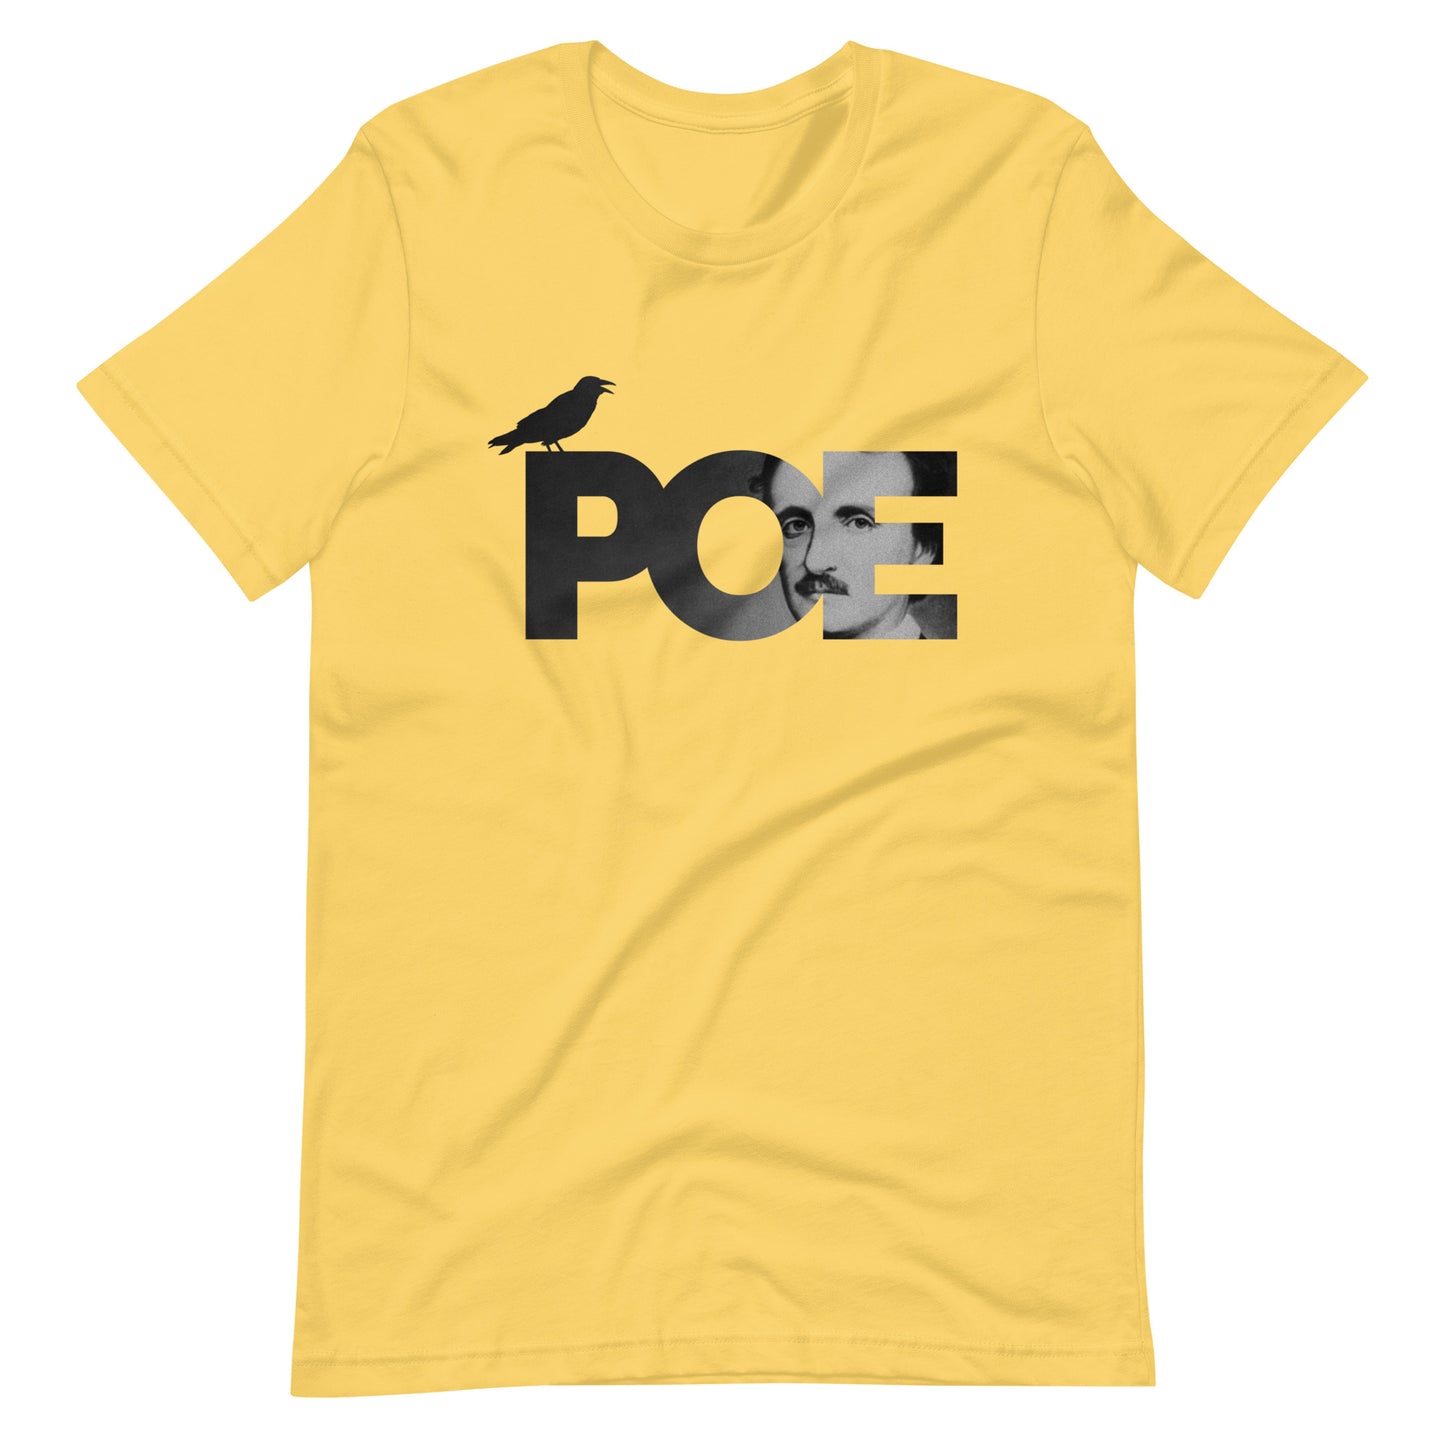 Women's Edgar Allan Poe t-shirt - Yellow Front